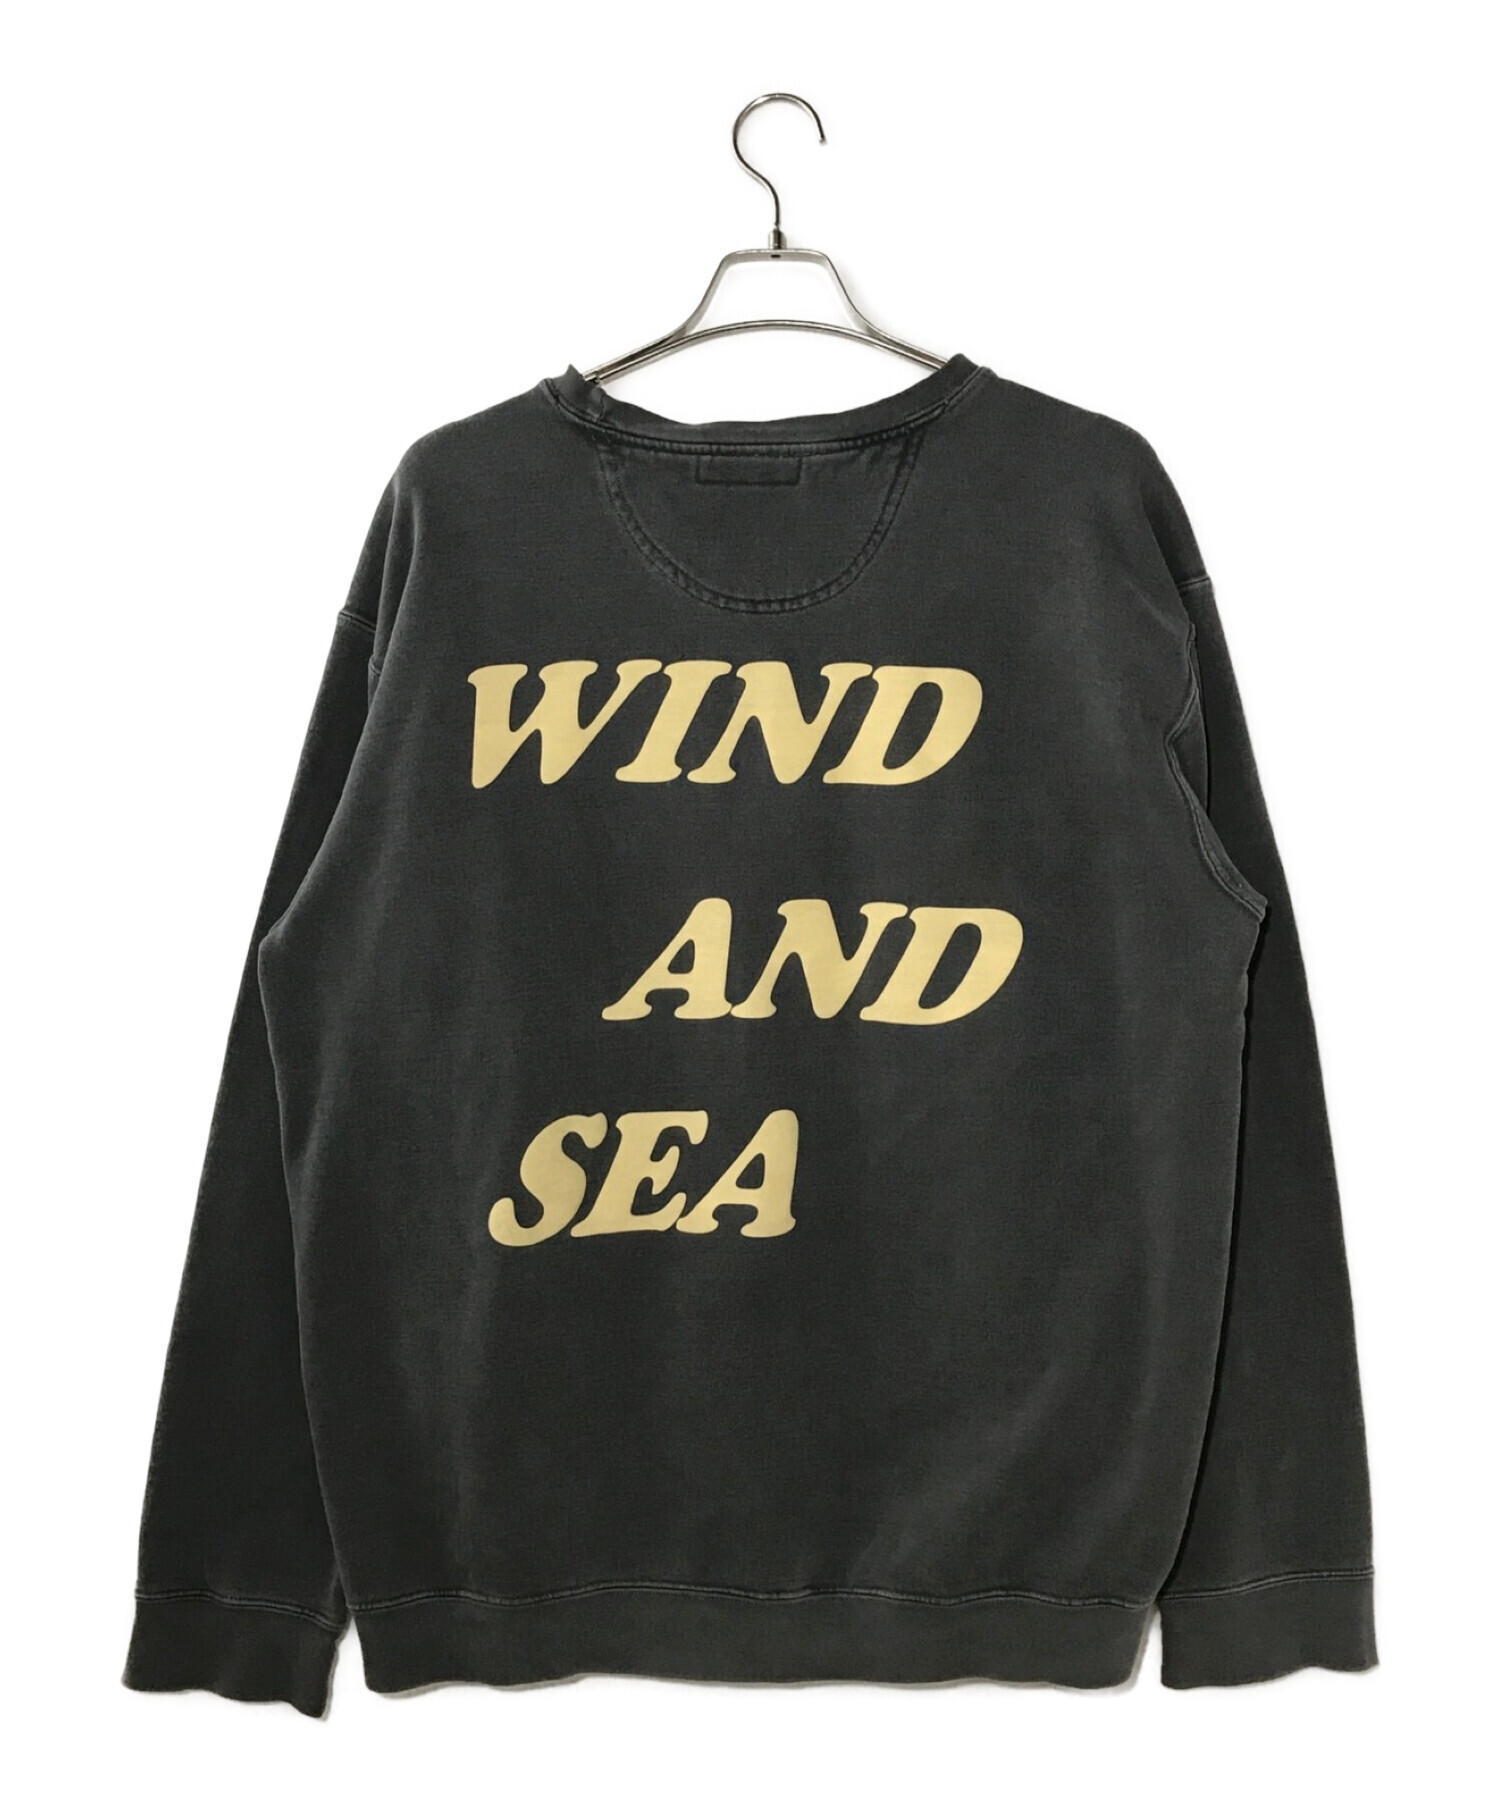 WIND AND SEA SEA(SPC) SWEAT SHIRT L 黒スウェット - スウェット